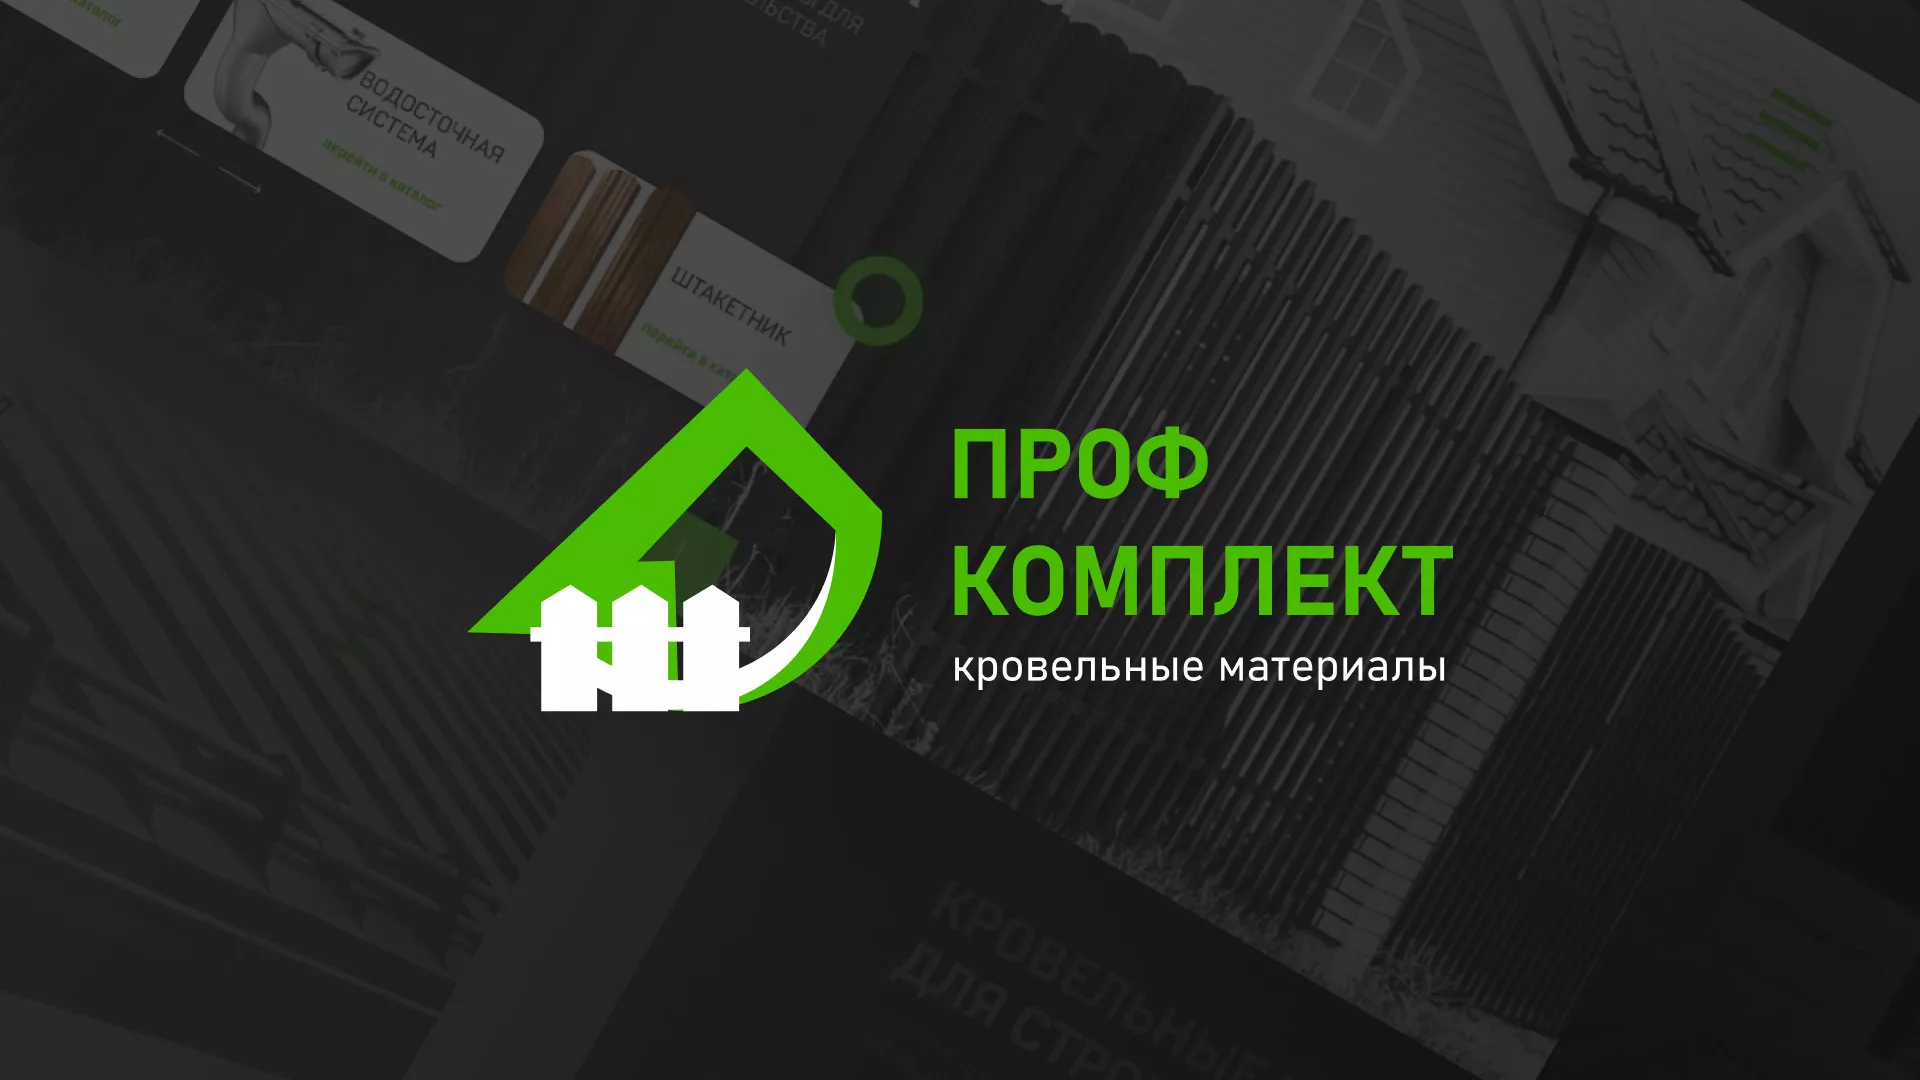 Создание сайта компании «Проф Комплект» в Бирюче